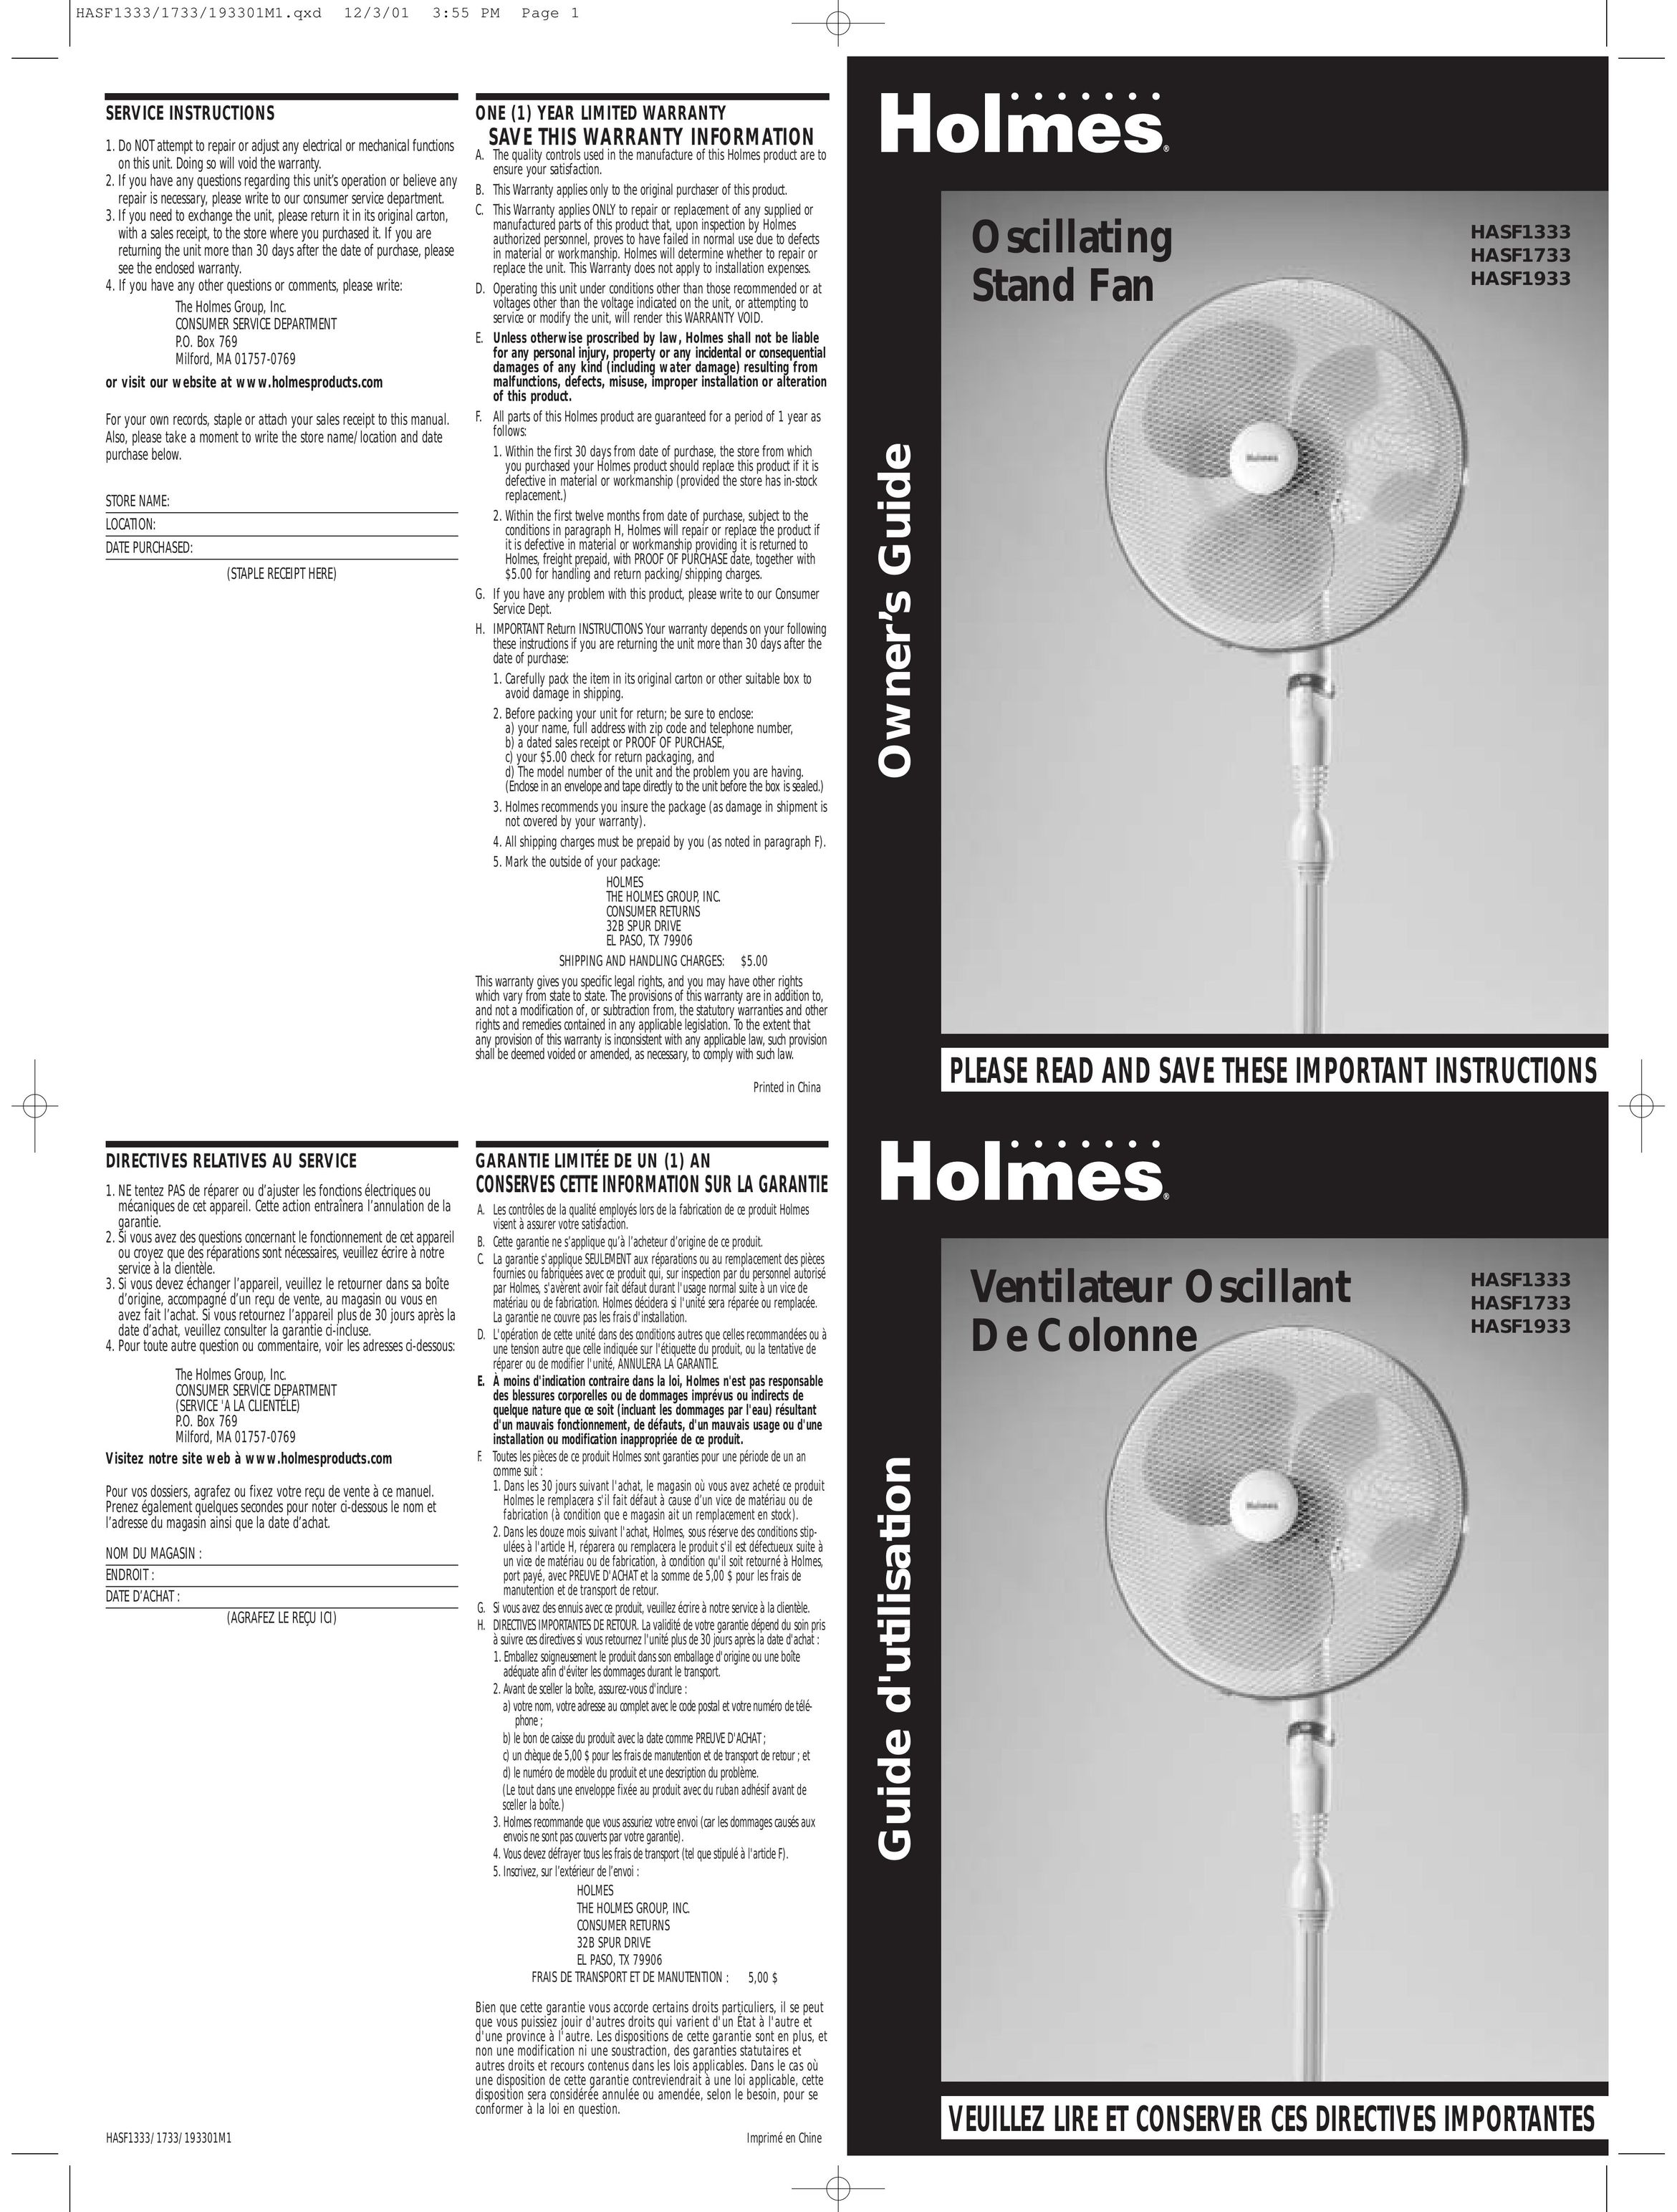 Holmes HASF1333 Fan User Manual